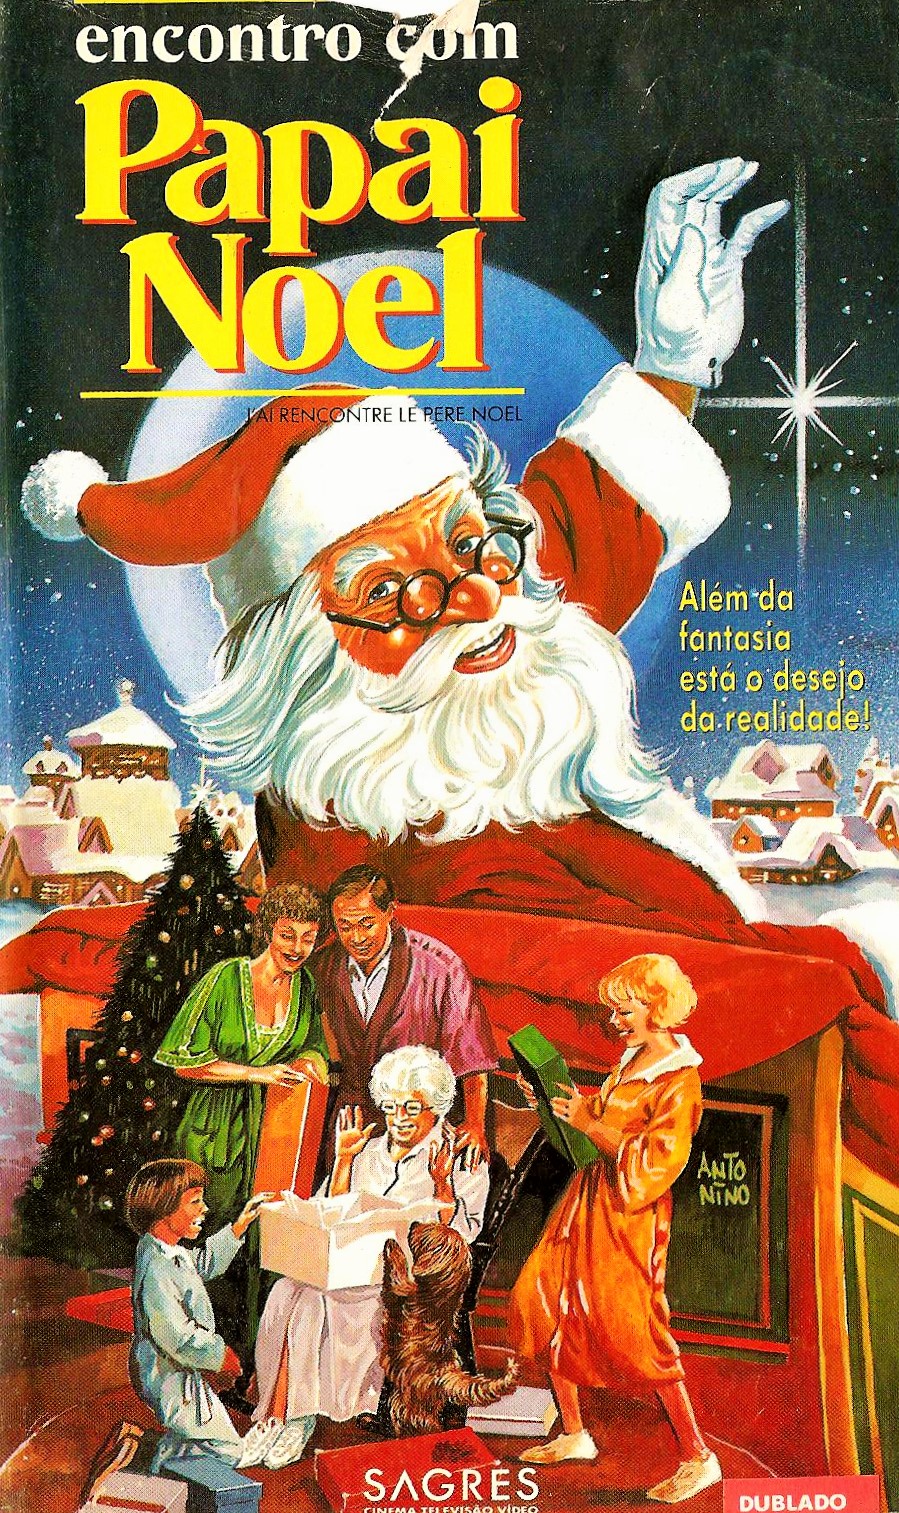 J'ai rencontré le Père Noël (1984) Screenshot 4 